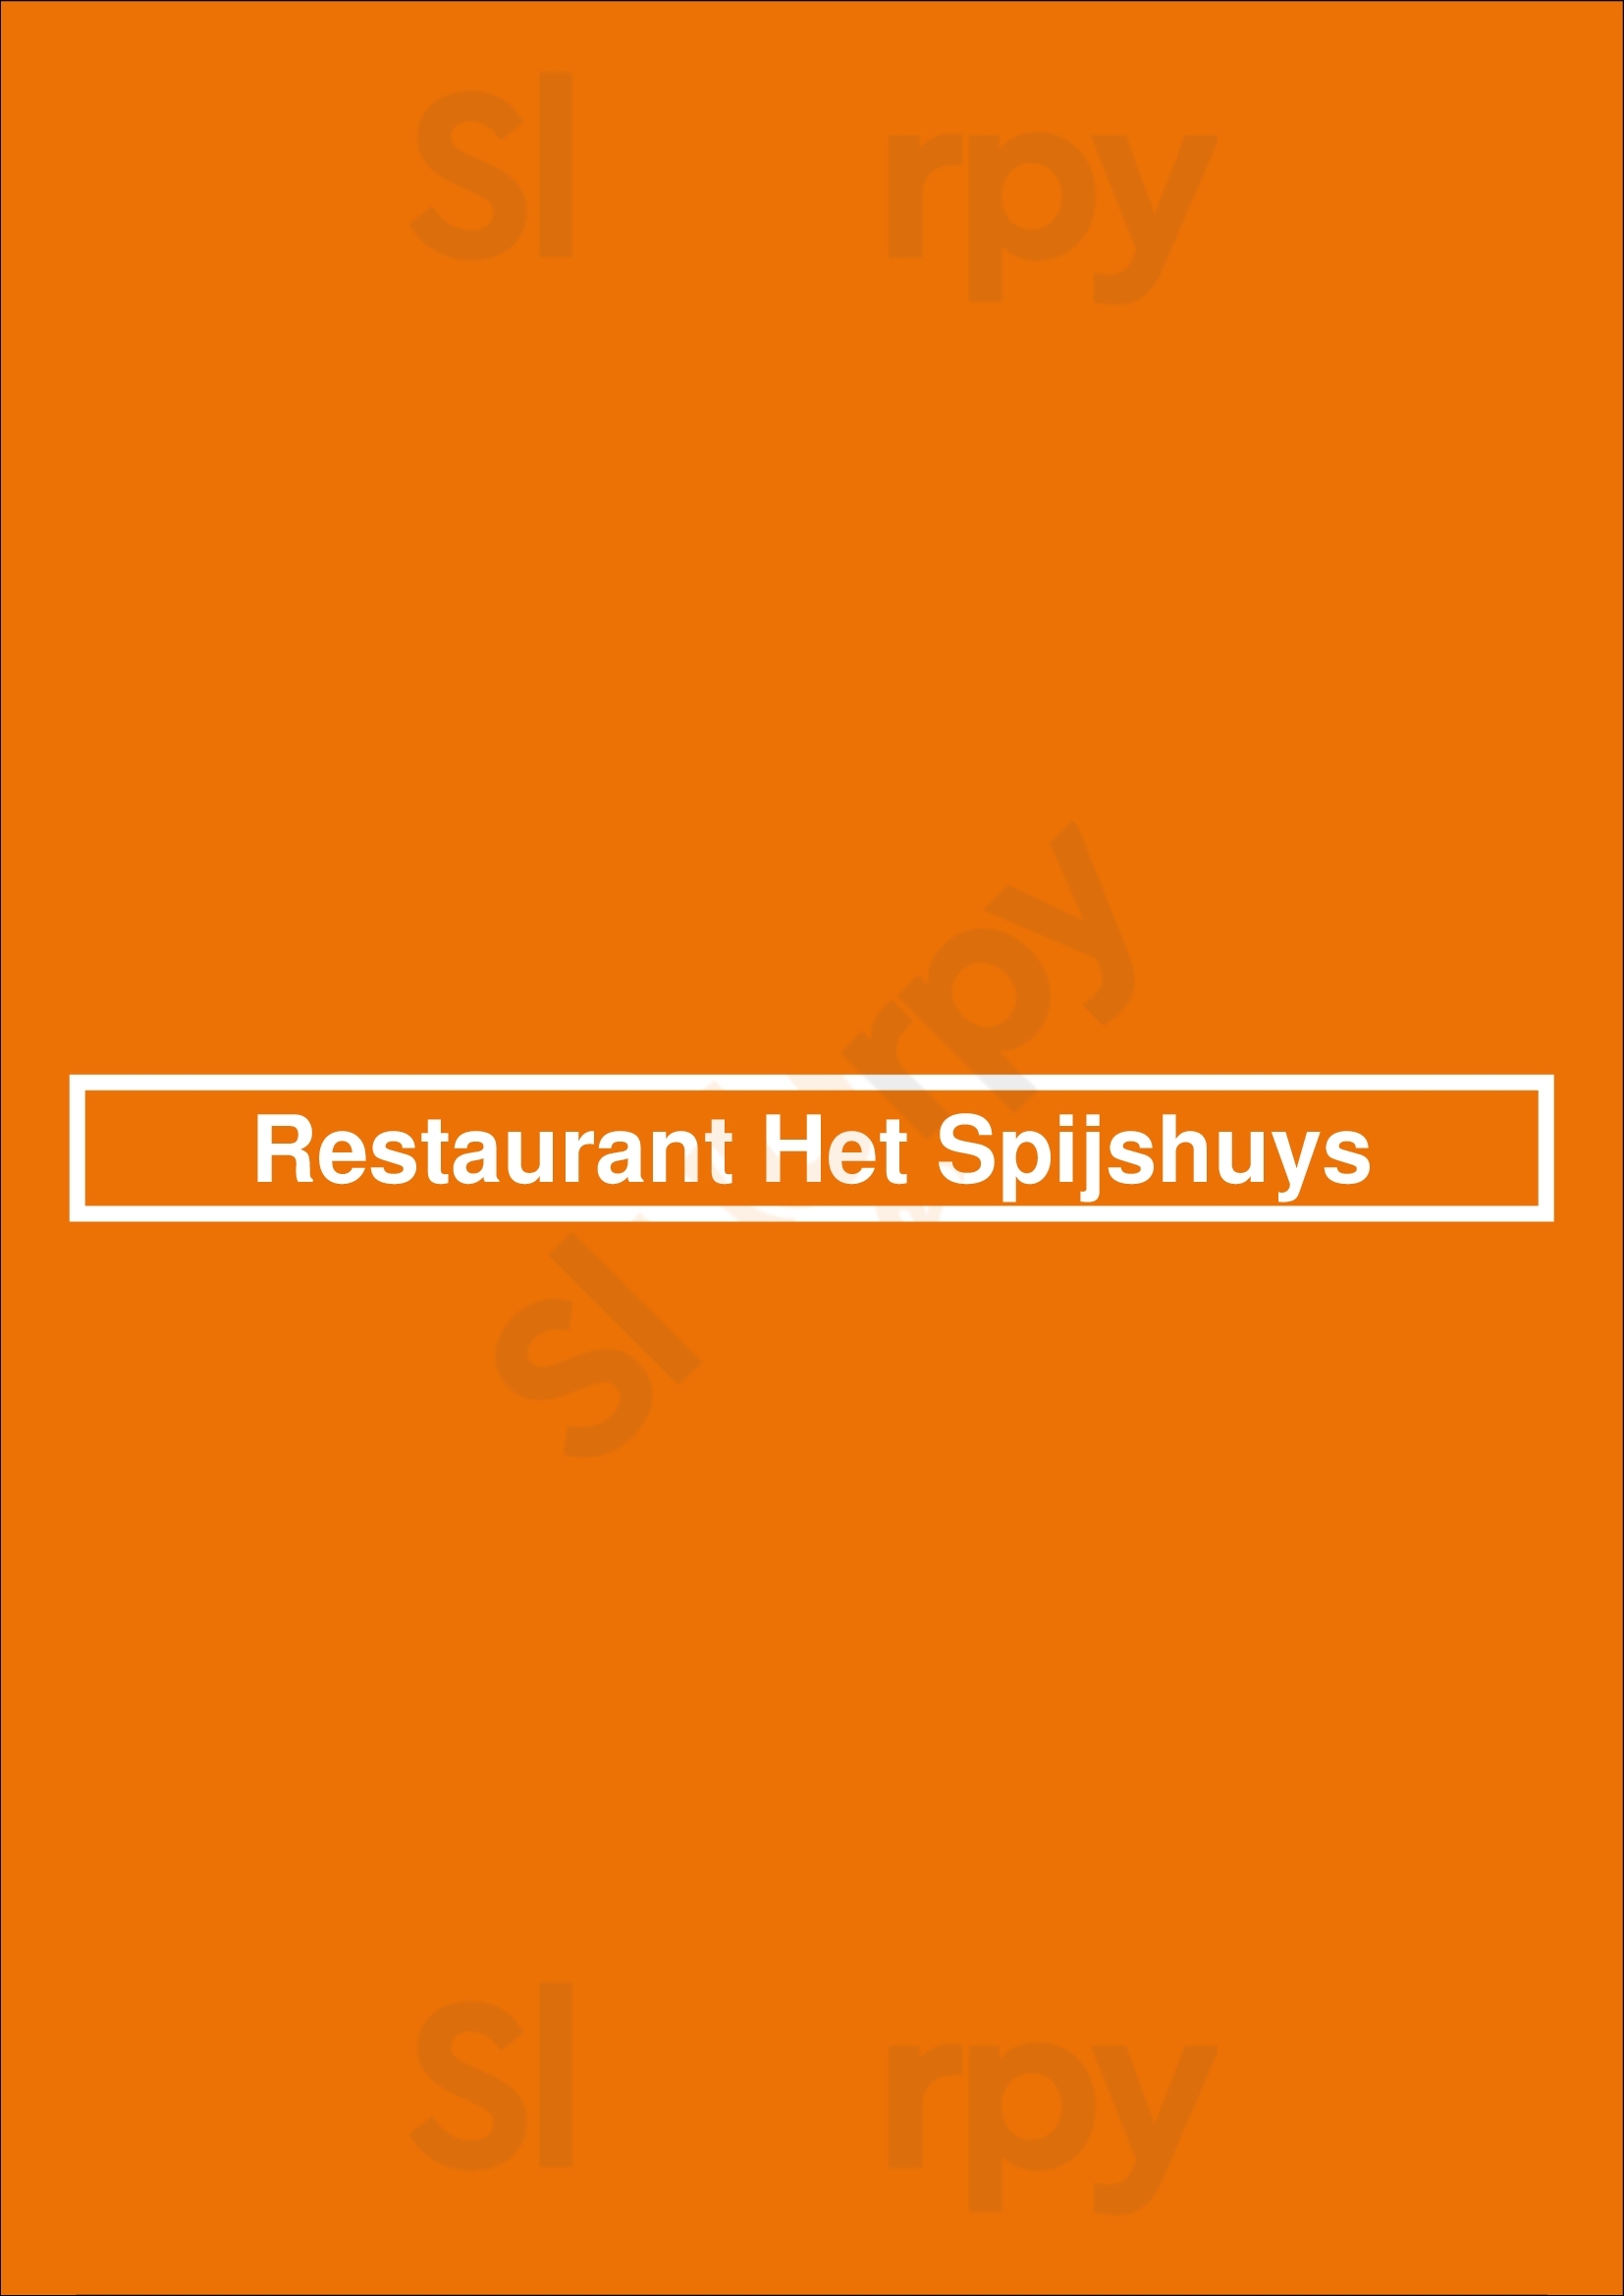 Restaurant Het Spijshuys Drachten Menu - 1